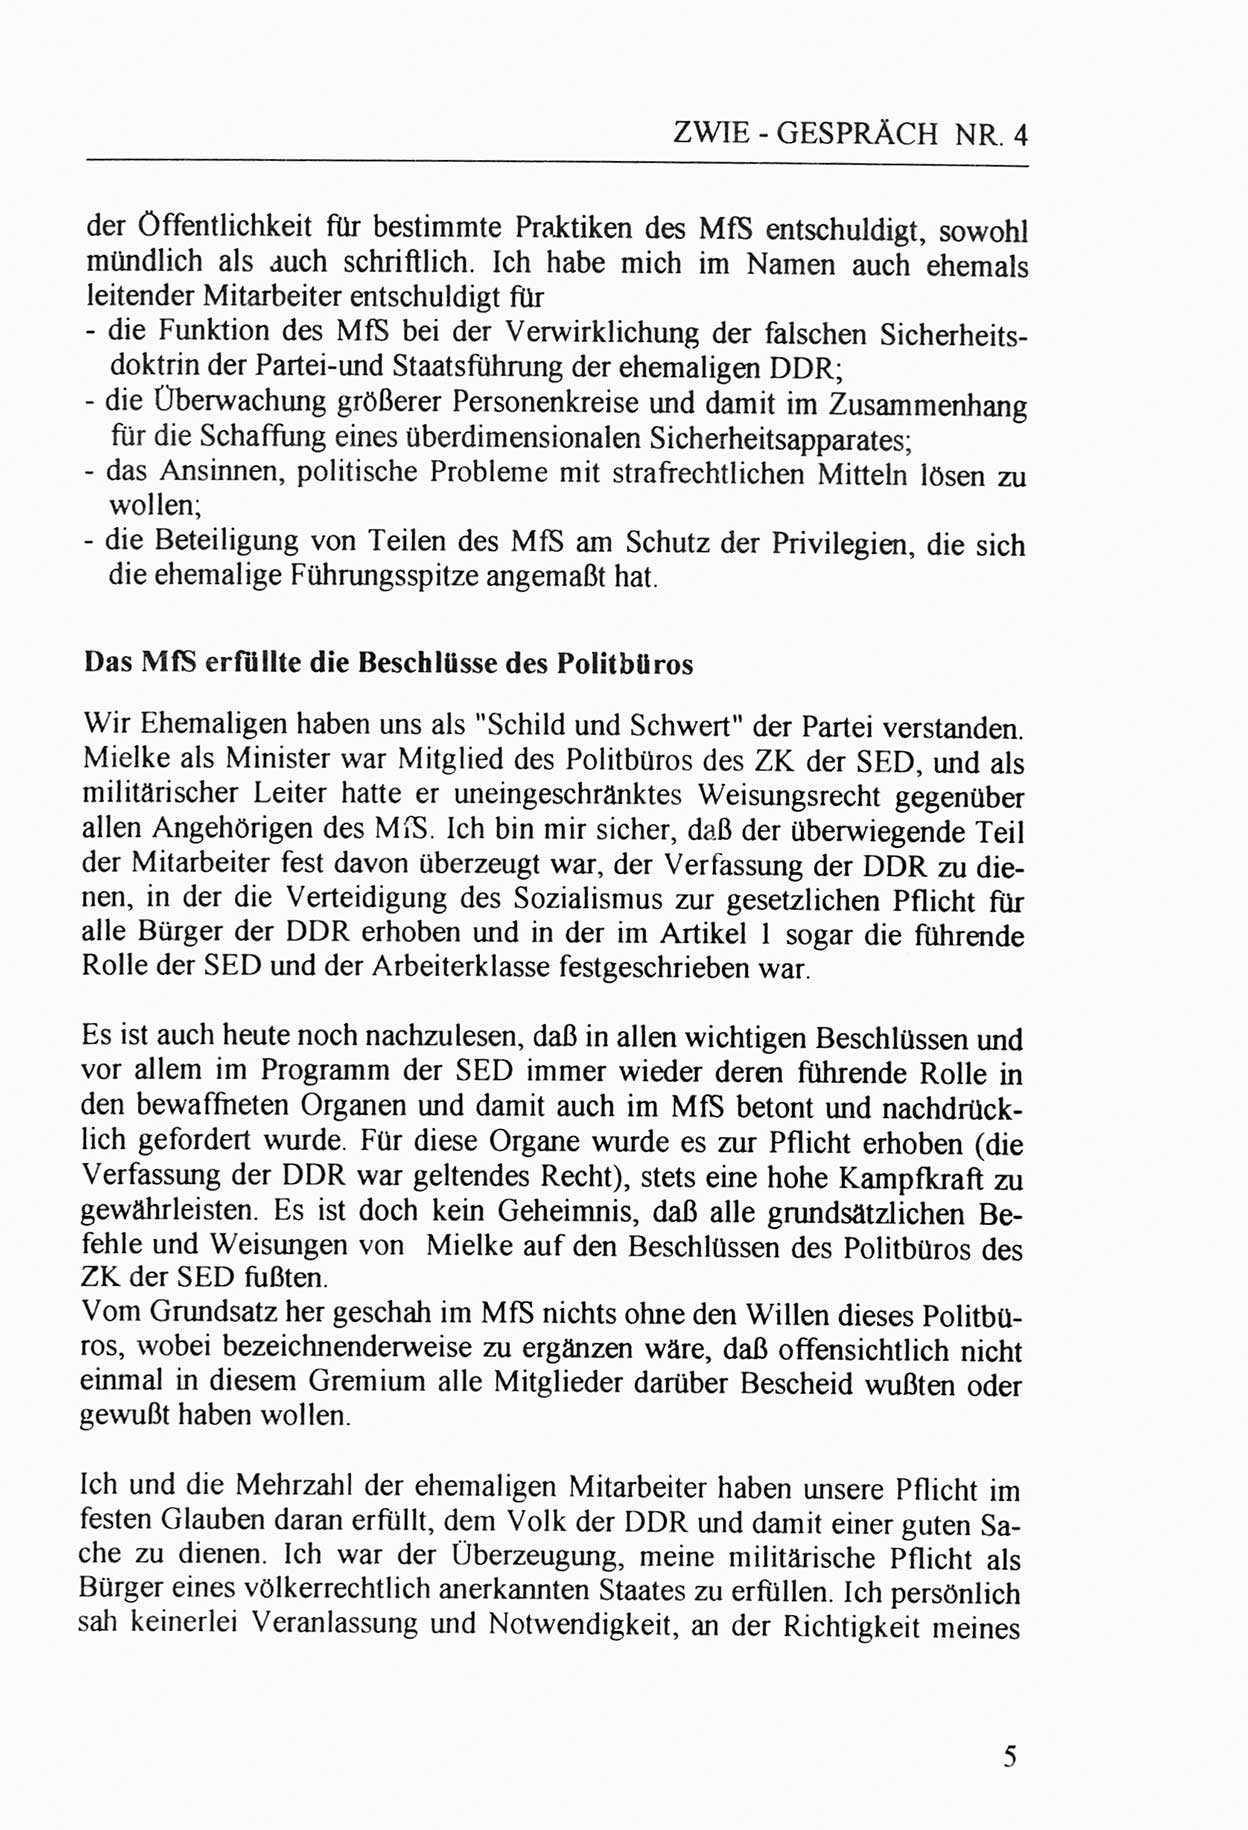 Zwie-Gespräch, Beiträge zur Aufarbeitung der Stasi-Vergangenheit [Deutsche Demokratische Republik (DDR)], Ausgabe Nr. 4, Berlin 1991, Seite 5 (Zwie-Gespr. Ausg. 4 1991, S. 5)